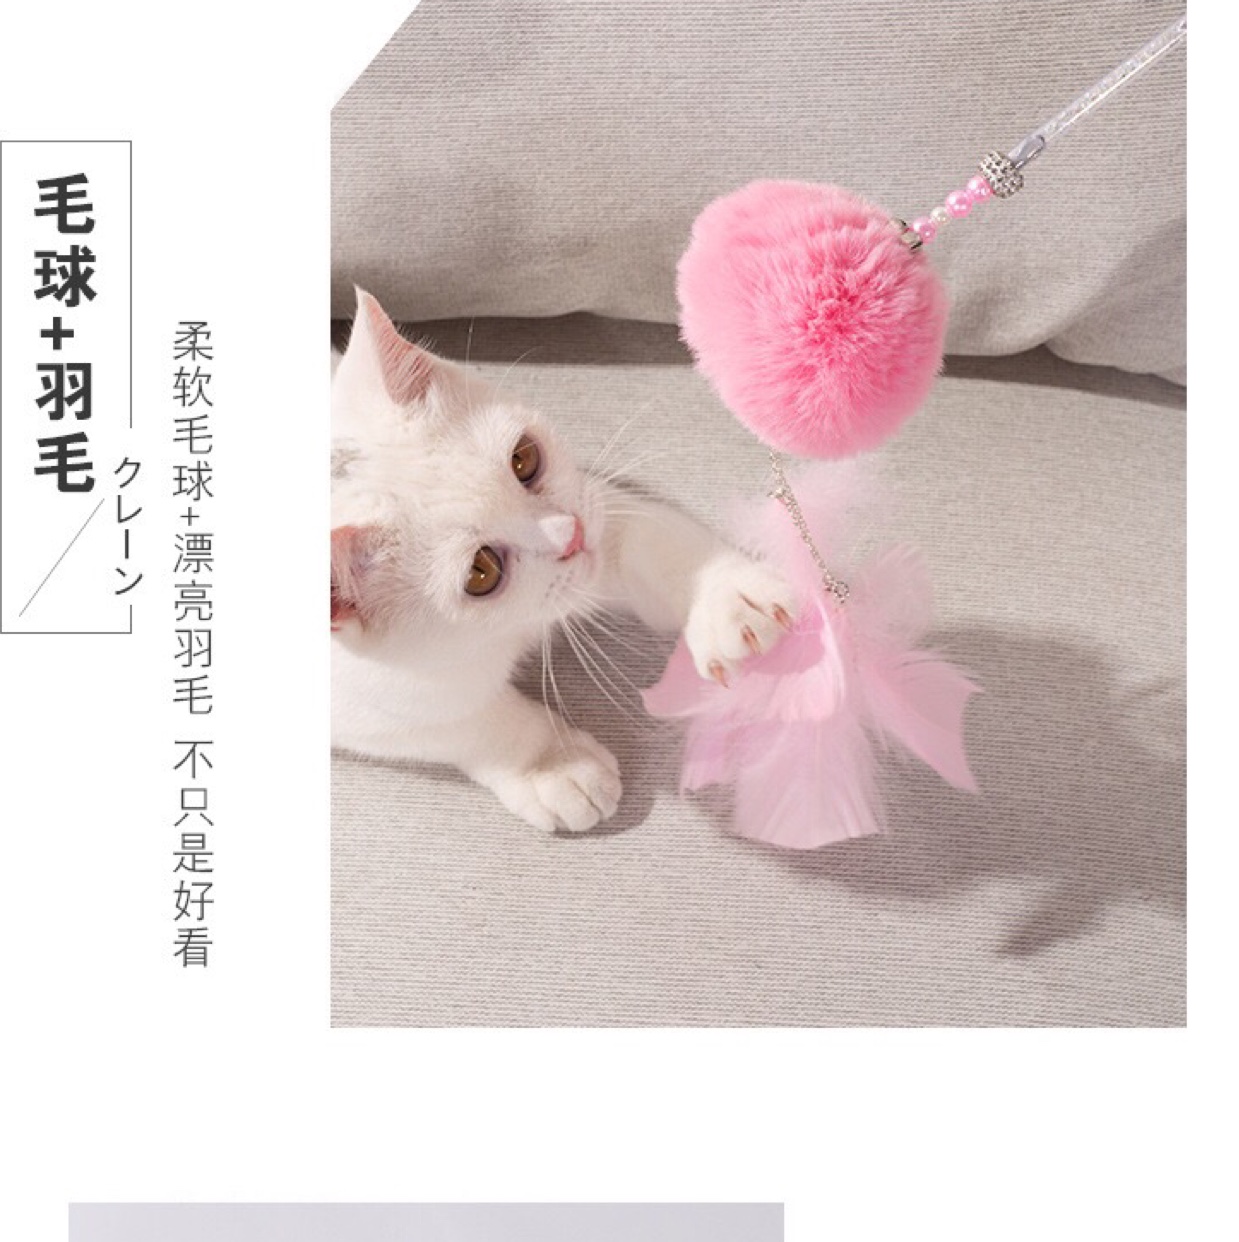 新款手工毛绒球铃铛仙女逗猫棒 可拆卸一款两用逗猫棒产品图